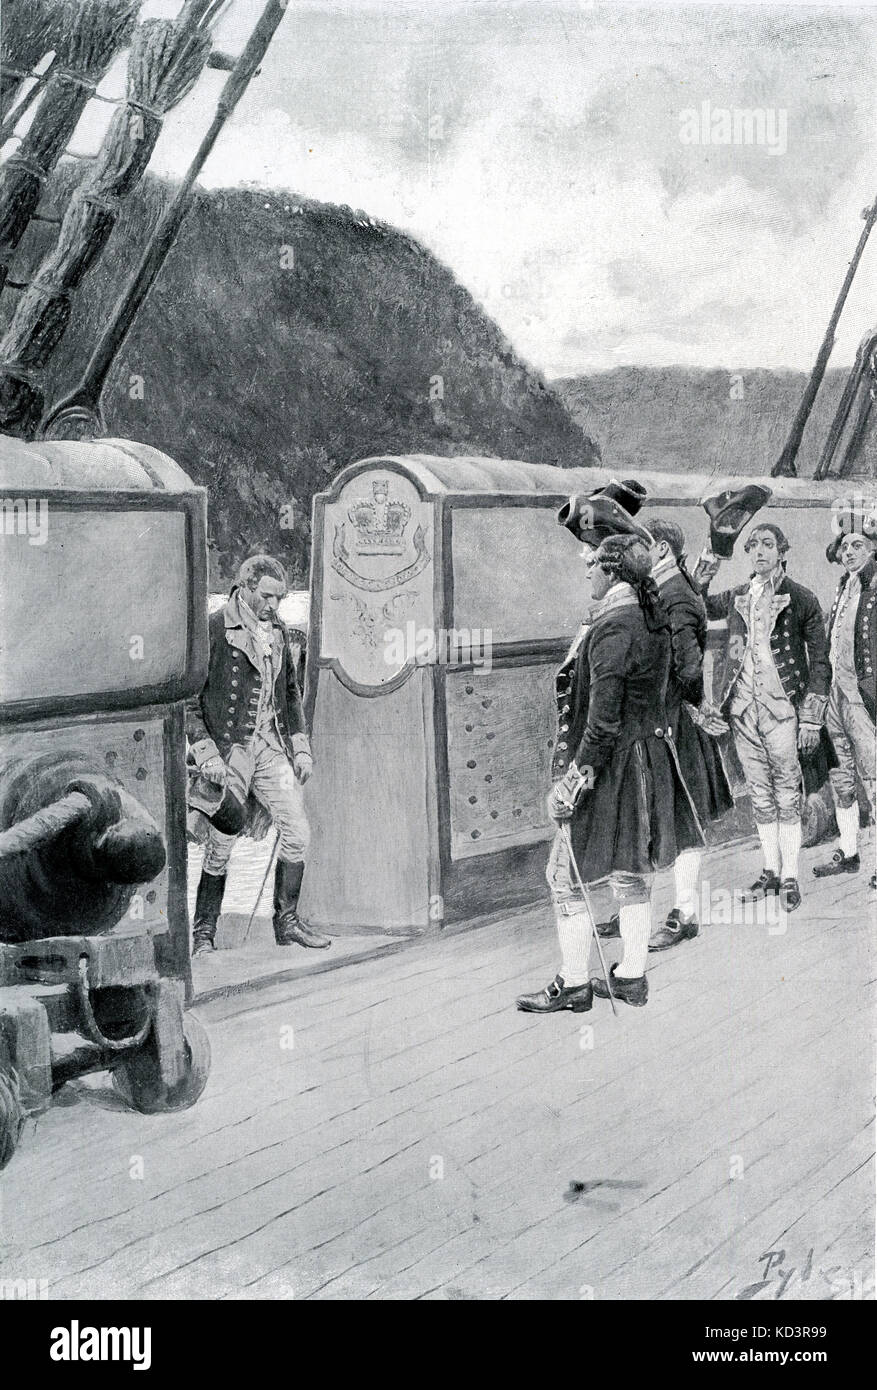 La fuga del generale rivoluzionario americano Benedict Arnold (1741 - 1801) sulla nave britannica Vulture, 1780, dopo aver sfidato gli inglesi. Rivoluzione americana. Illustrazione di Howard Pyle, 1896 Foto Stock